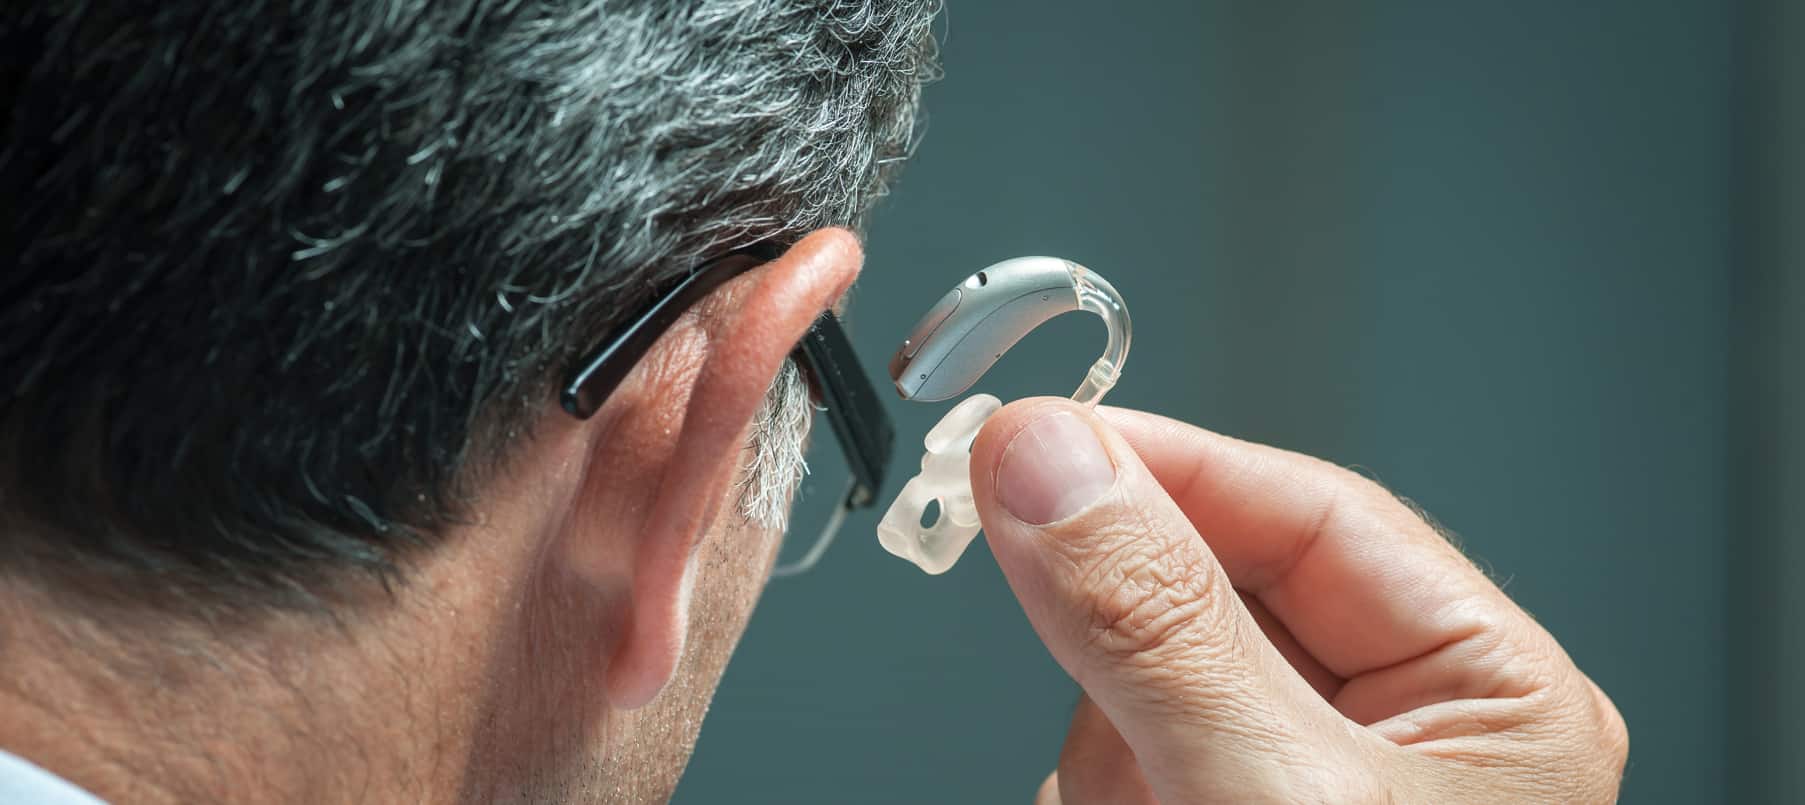 Un homme entrain d'admirer une prothèse auditive